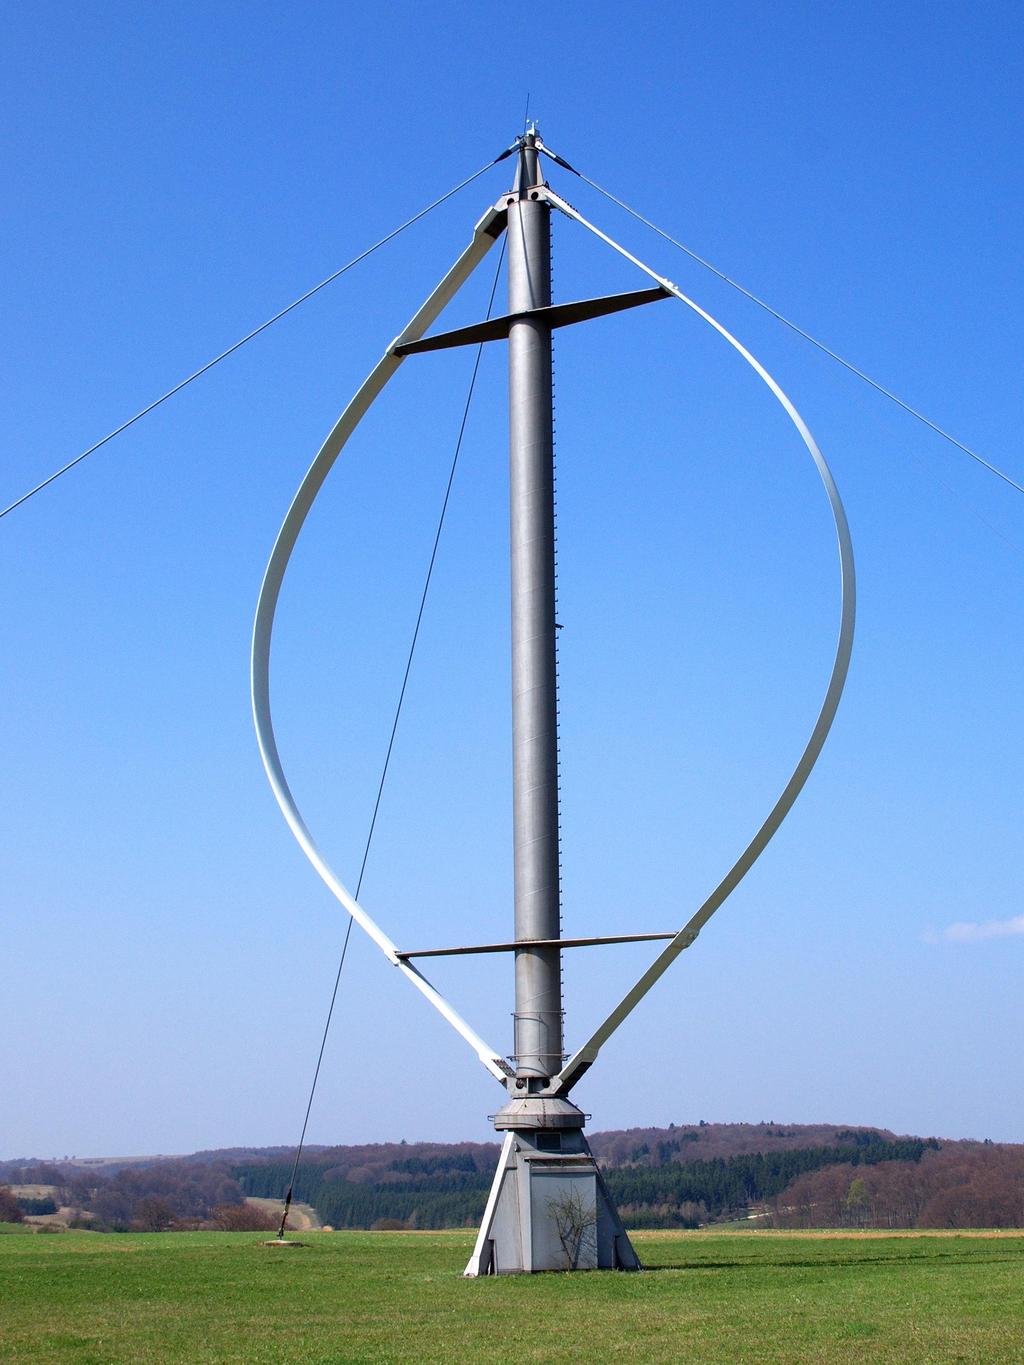 3: Torre eólica com aerogerador de eixo vertical do tipo Darrieus.